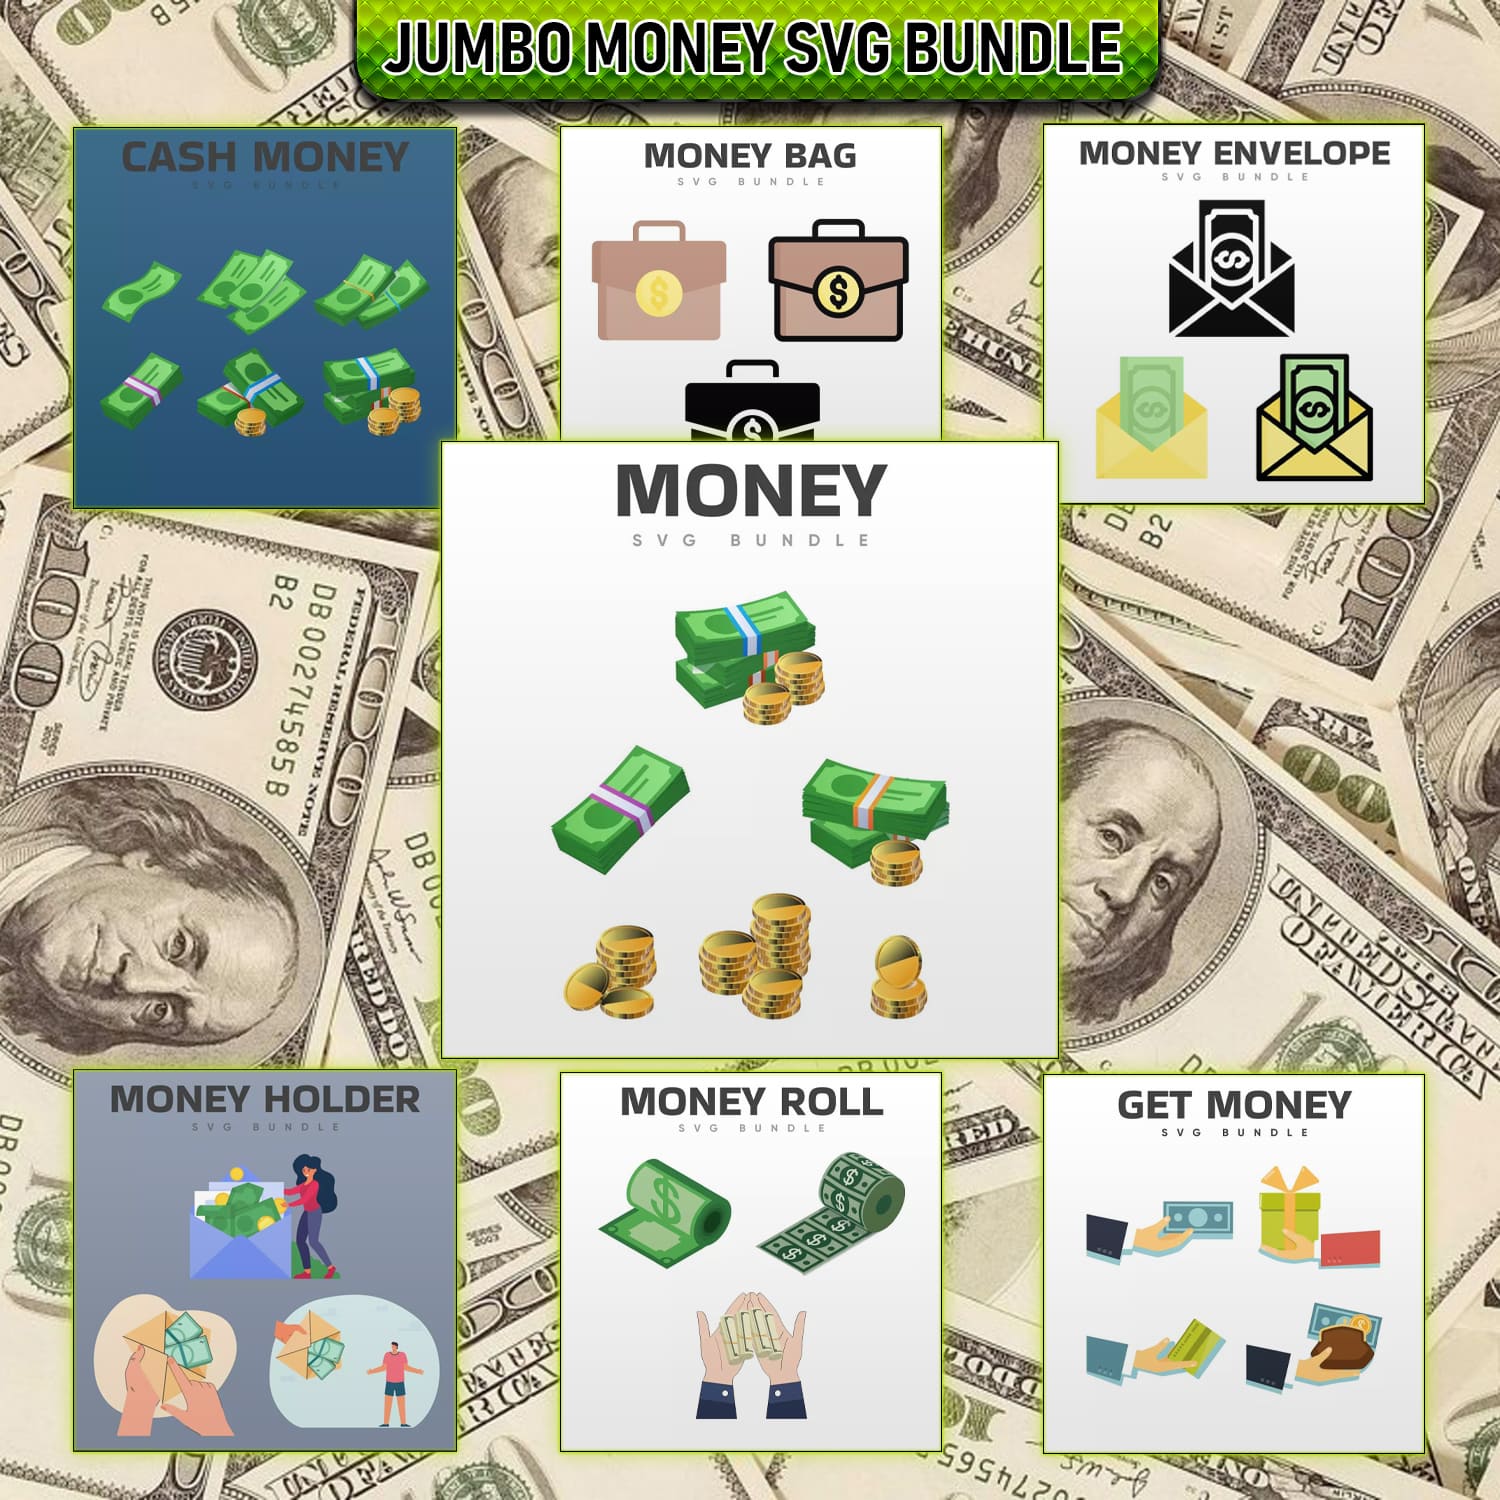 Jumbo Money SVG Bundle cover image.